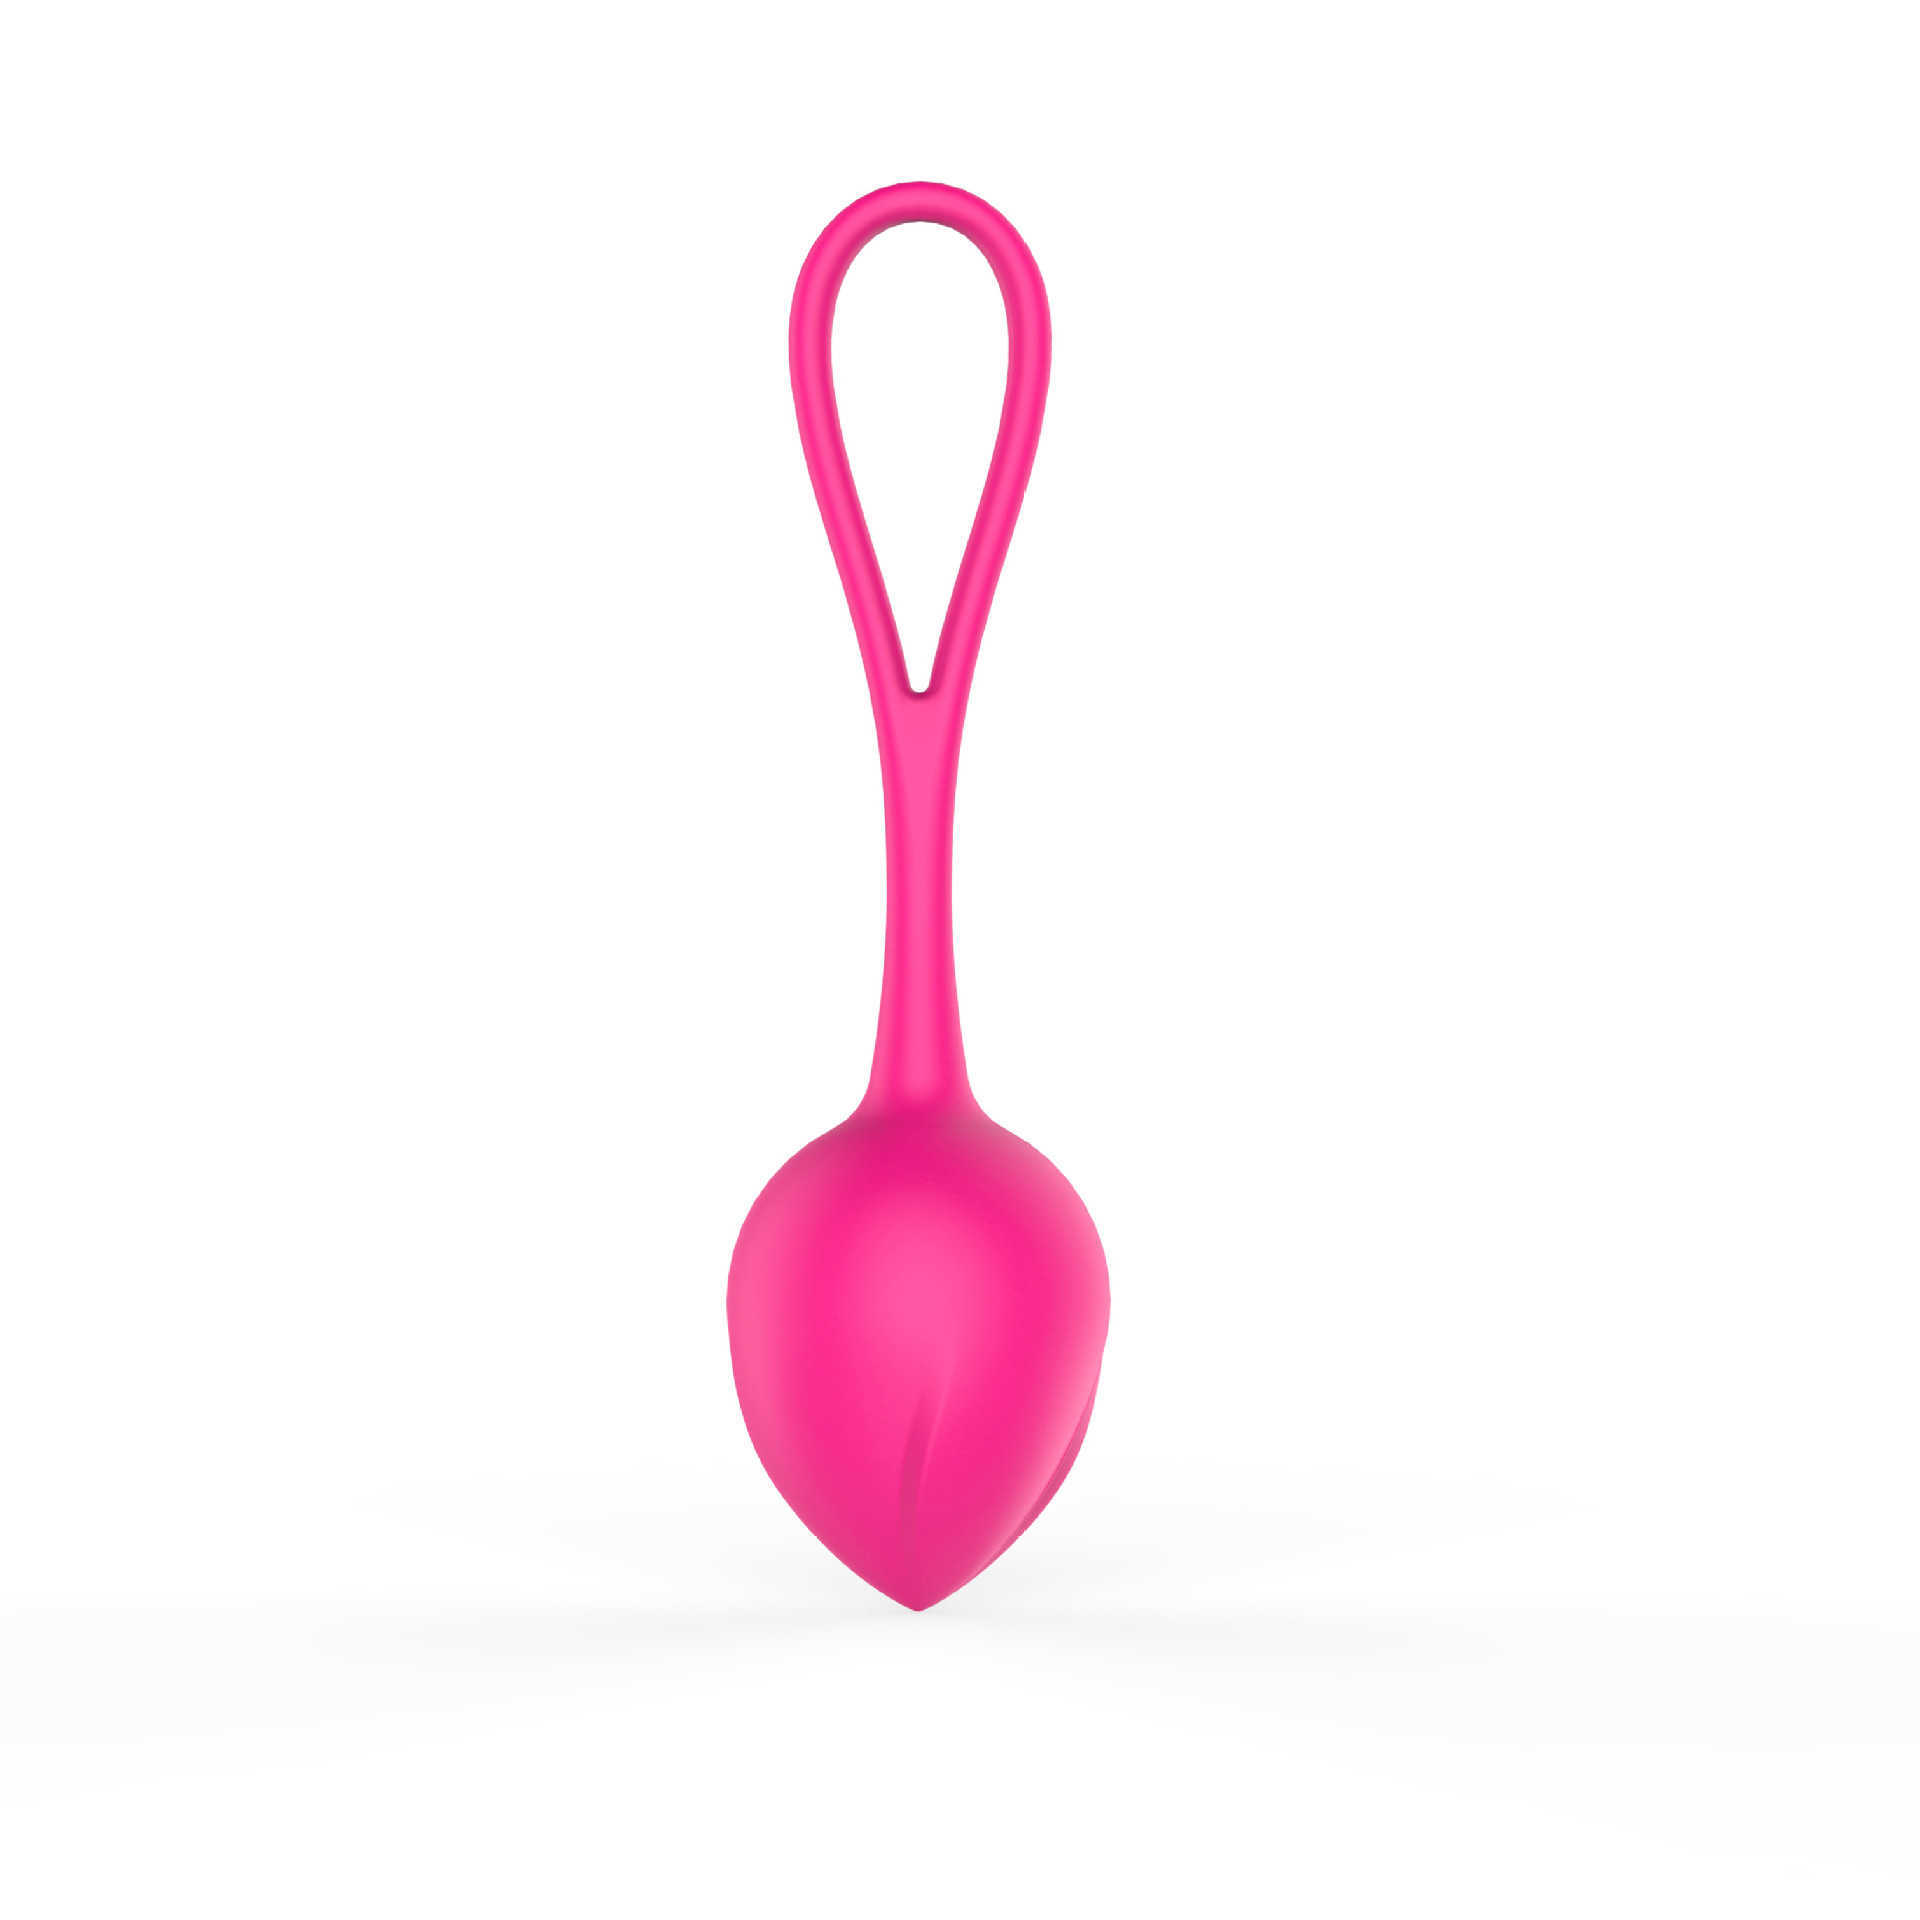 Женский инструмент с дистанционным управлением для прыжков с яйцом, гантели, уменьшающий мяч, укрепляющий, забавный инструмент, скидка 75% на онлайн-продажи